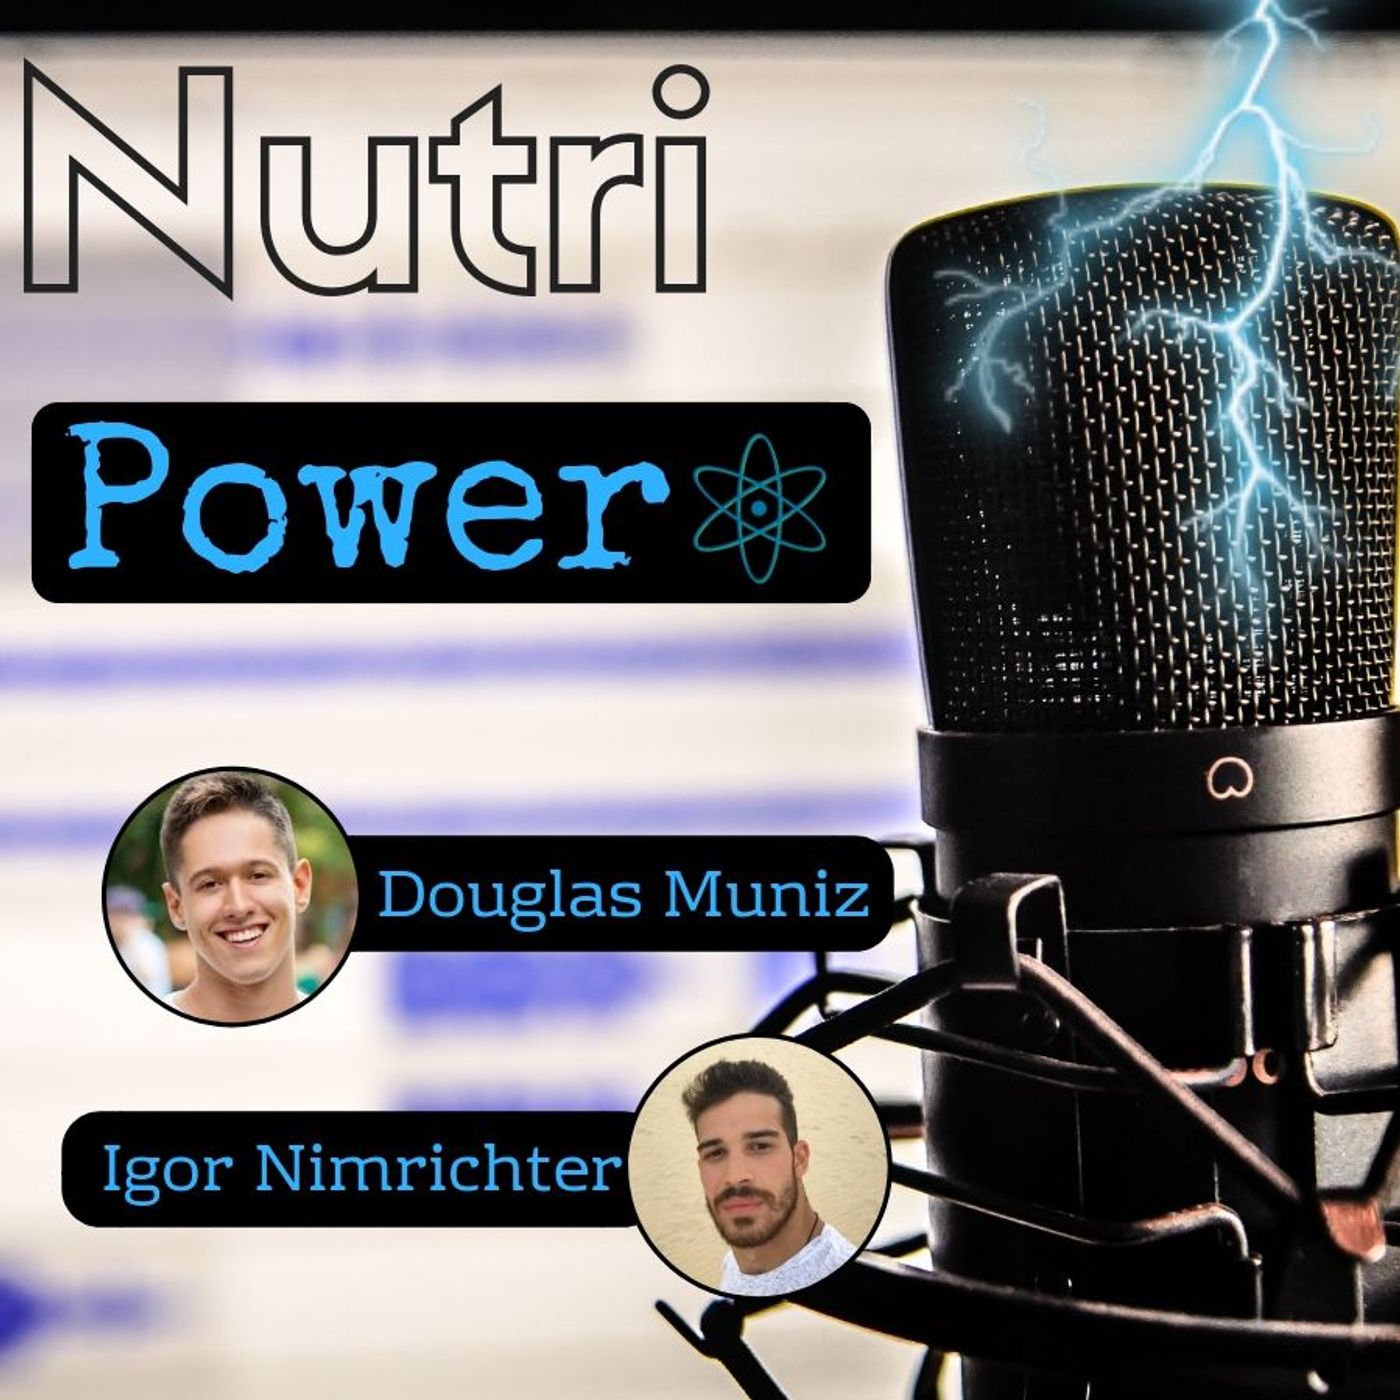 NutriPower - Desvendando a Nutrição